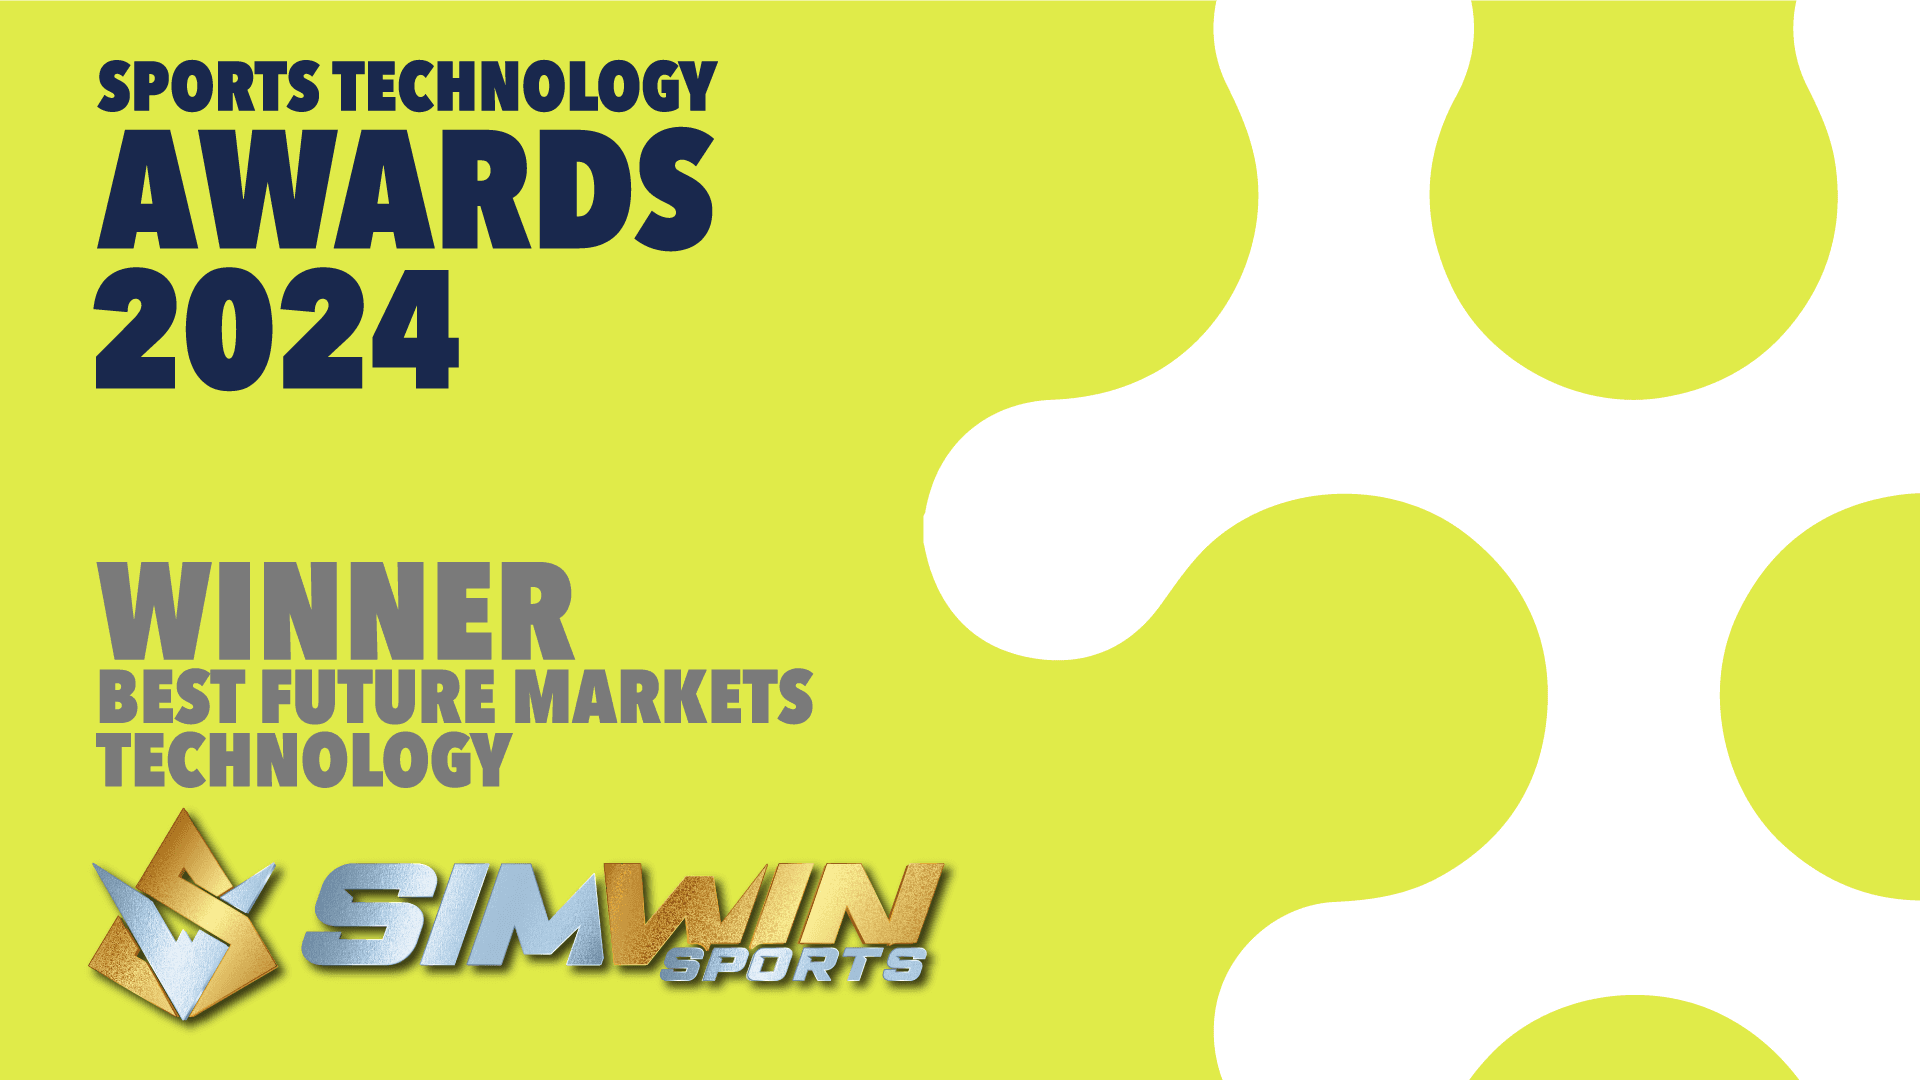 Best Future Markets Technology Award 2024